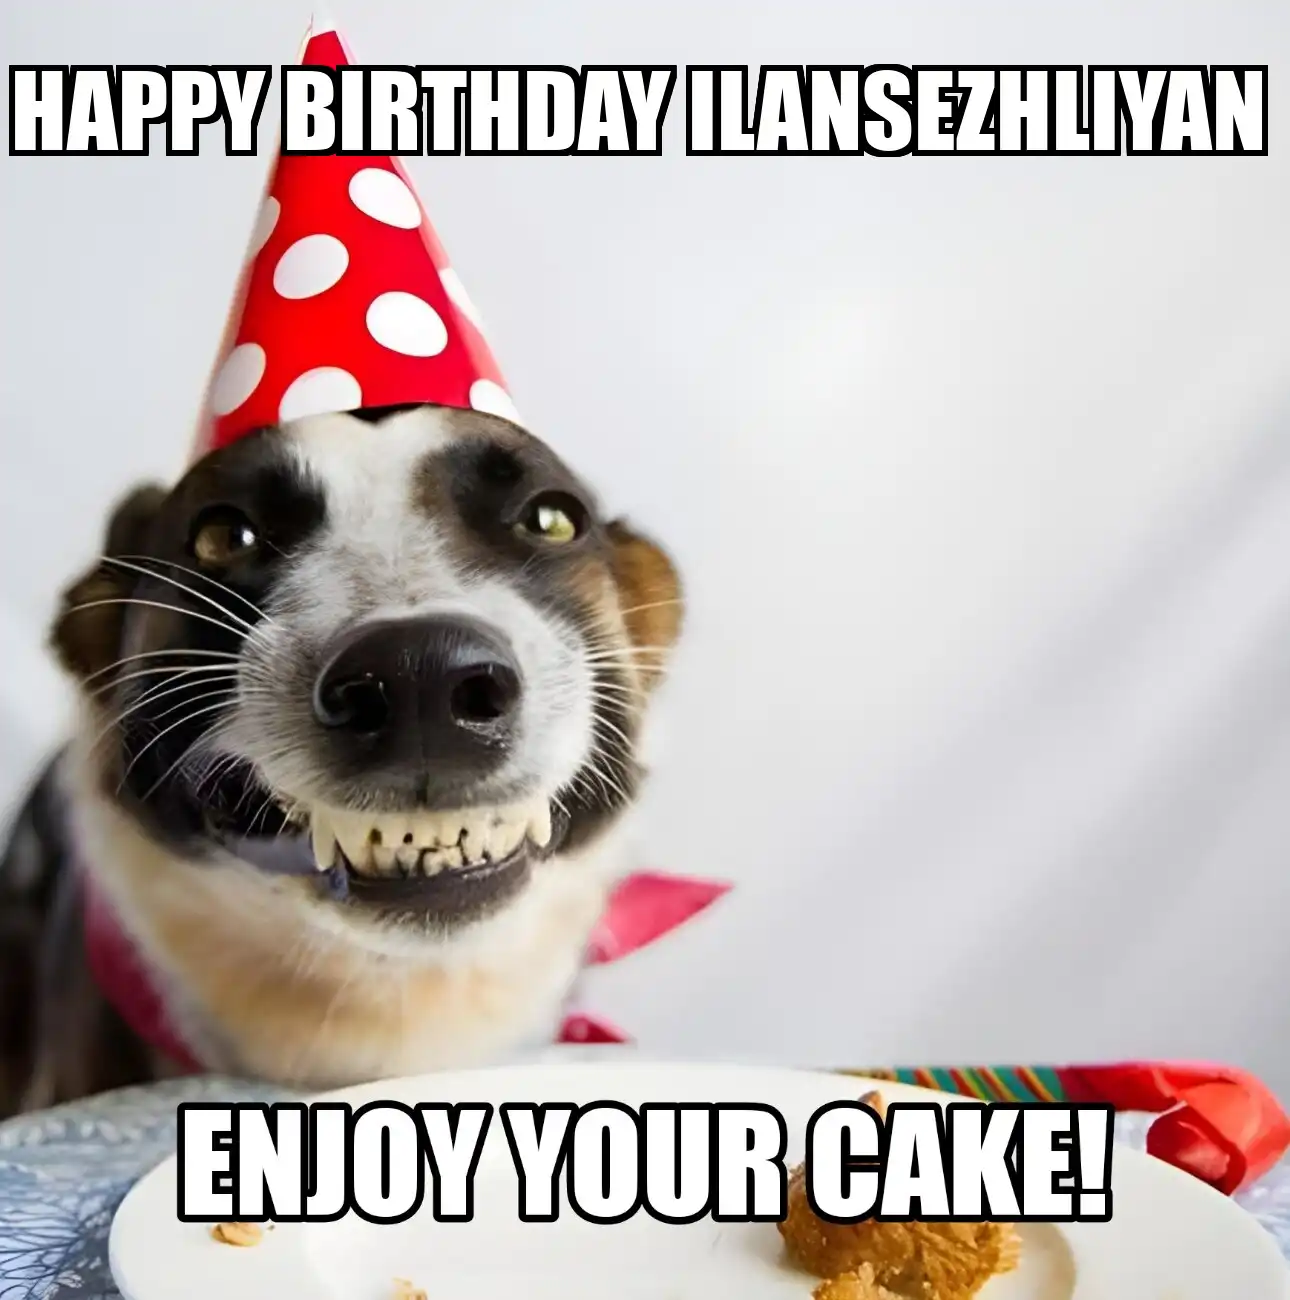 Happy Birthday Ilansezhliyan Enjoy Your Cake Dog Meme